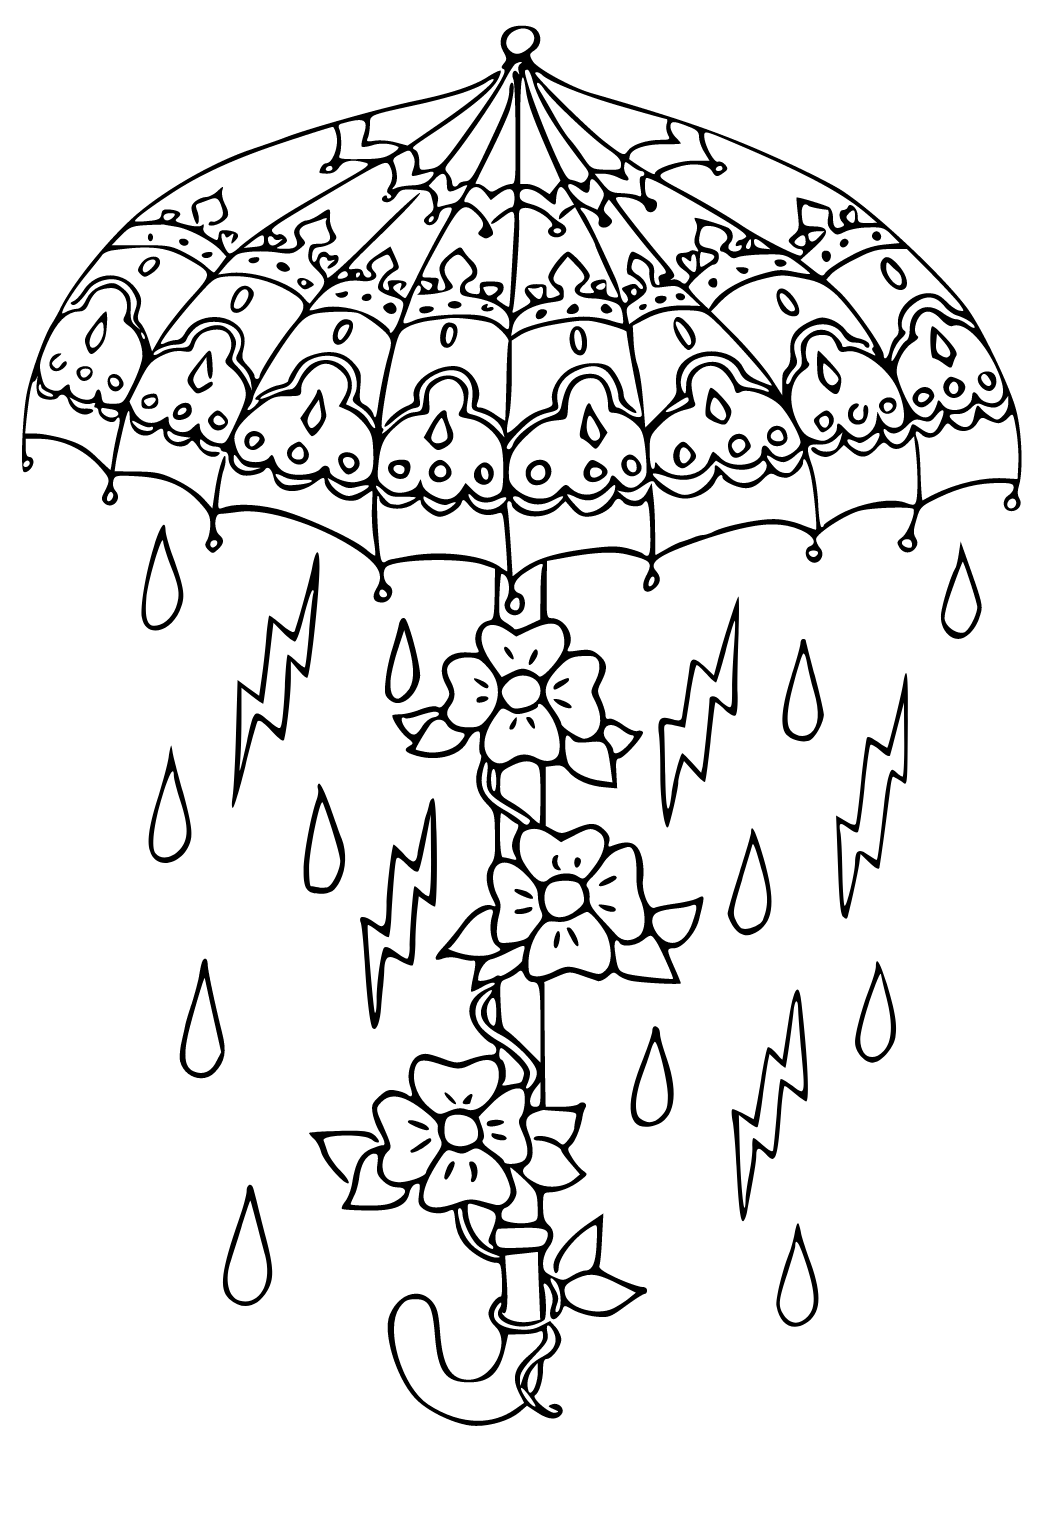 Dibujo de Un paraguas pintado por en Dibujos.net el día 18-12-20 a las  05:01:09. Imprime, pinta o colorea tus propios dibujos!